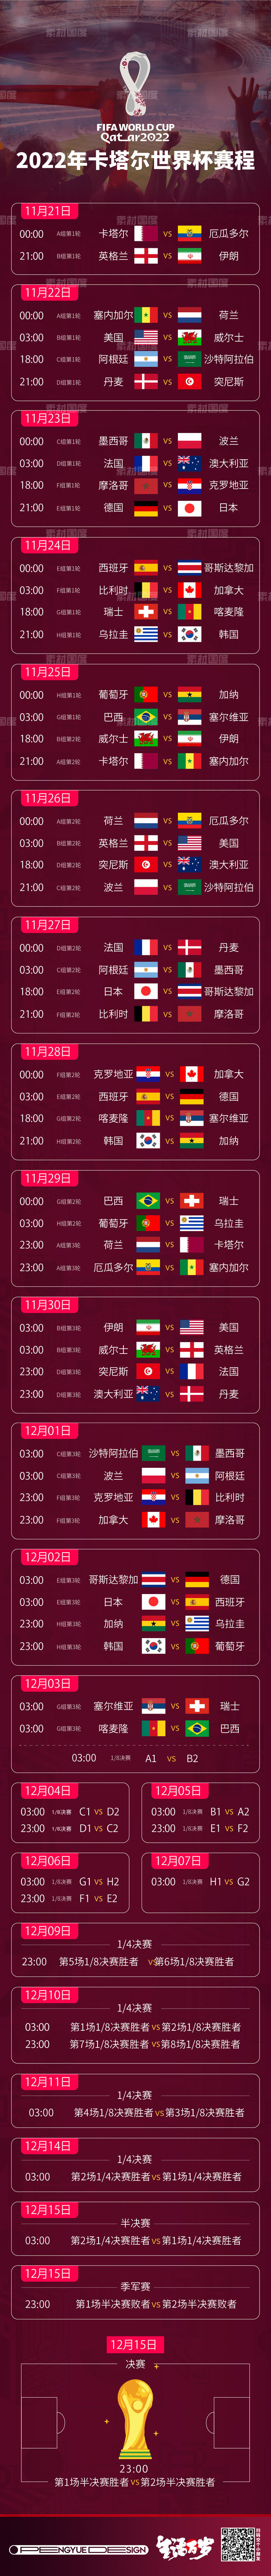 2022卡塔尔世界杯全部赛程时间表